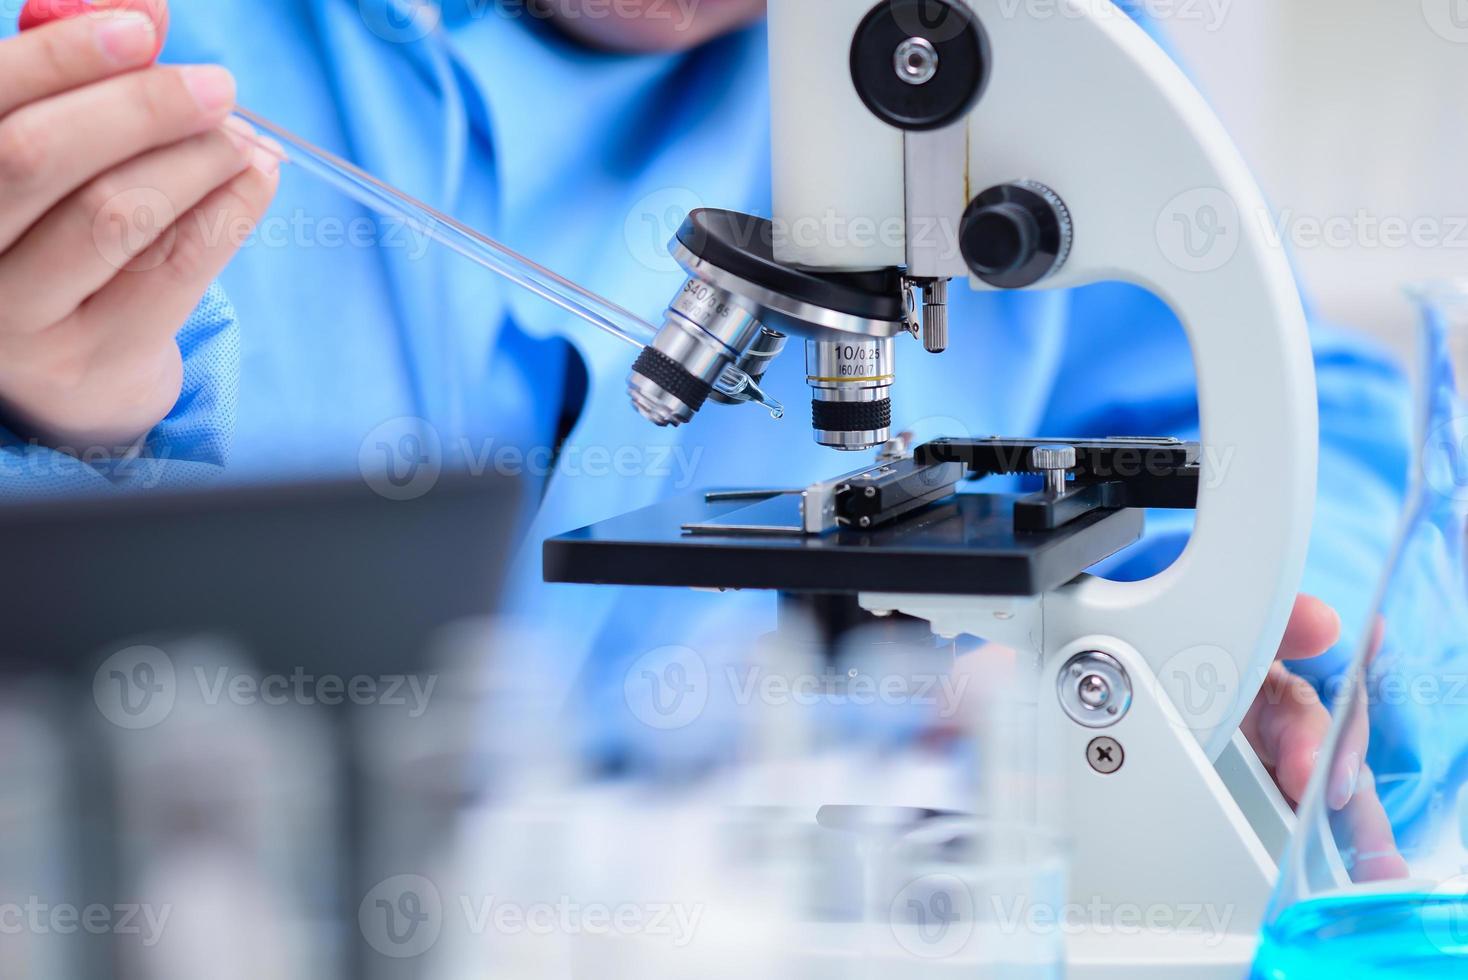 os cientistas estão preparando amostras para examinar os espécimes com um microscópio em laboratório, colocando a solução em uma placa de vidro com uma pipeta no microscópio. ,conceito farmacêutico,inventou a vacina foto